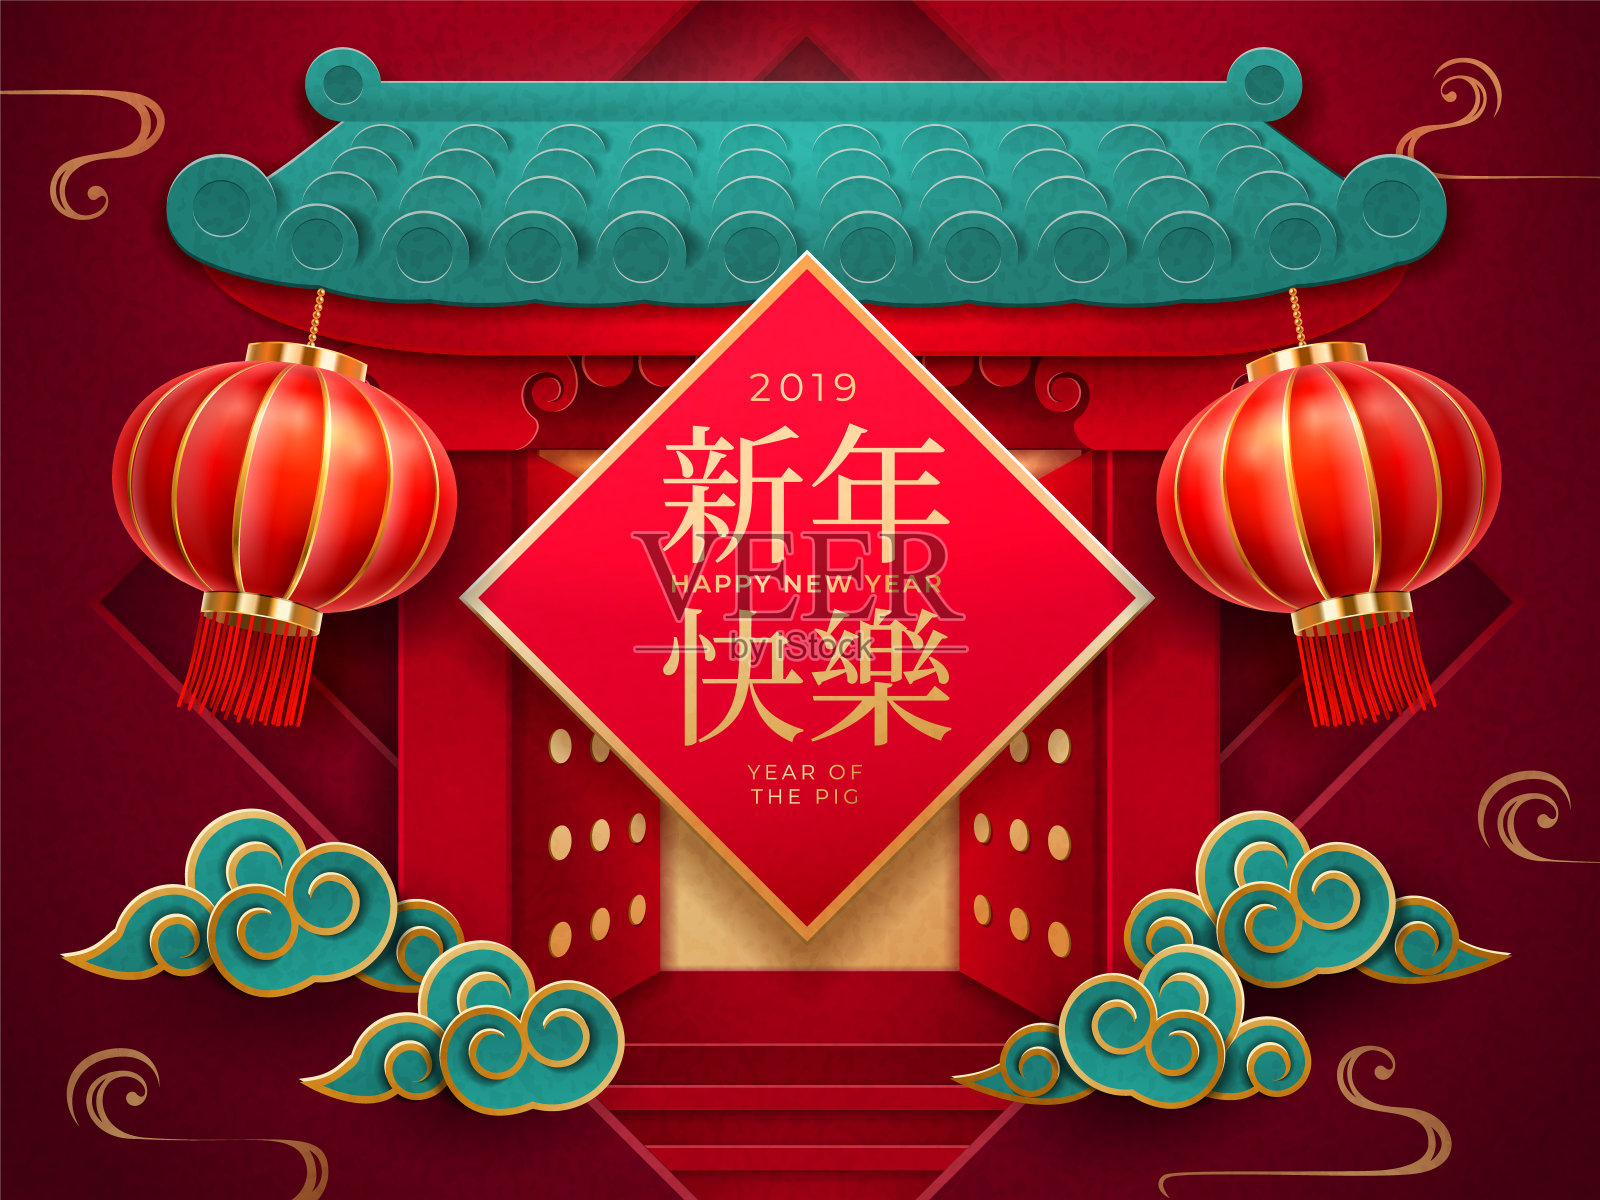 大门上挂着2019年中国新年卡片设计模板素材